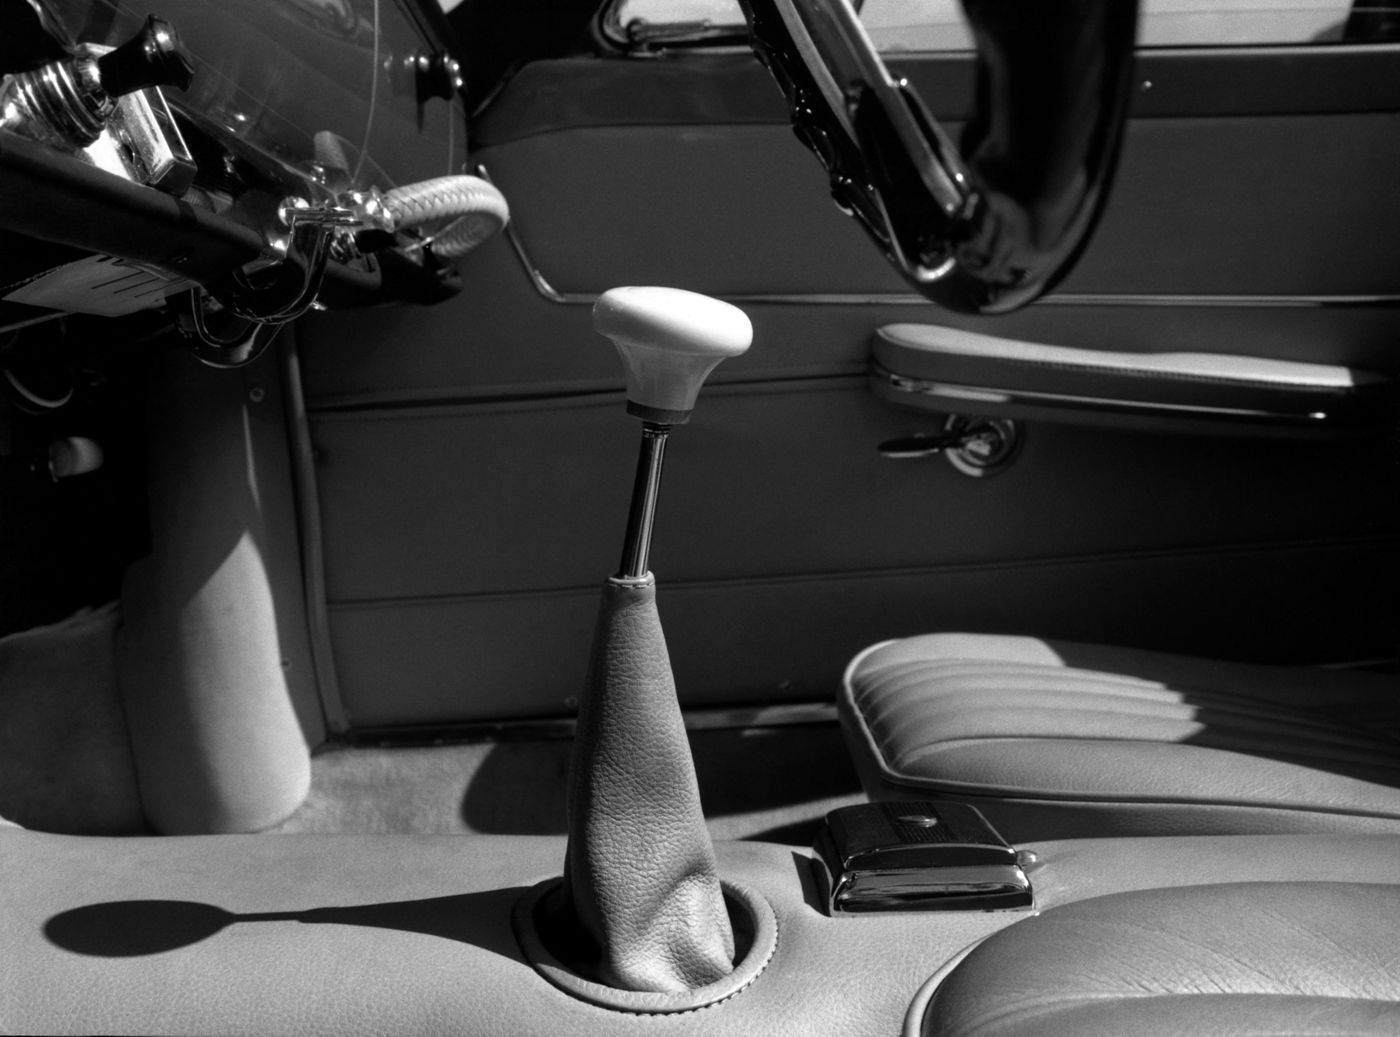 1958 Maserati 3500GT Spyder - interior of the classic open-top GranTurismo